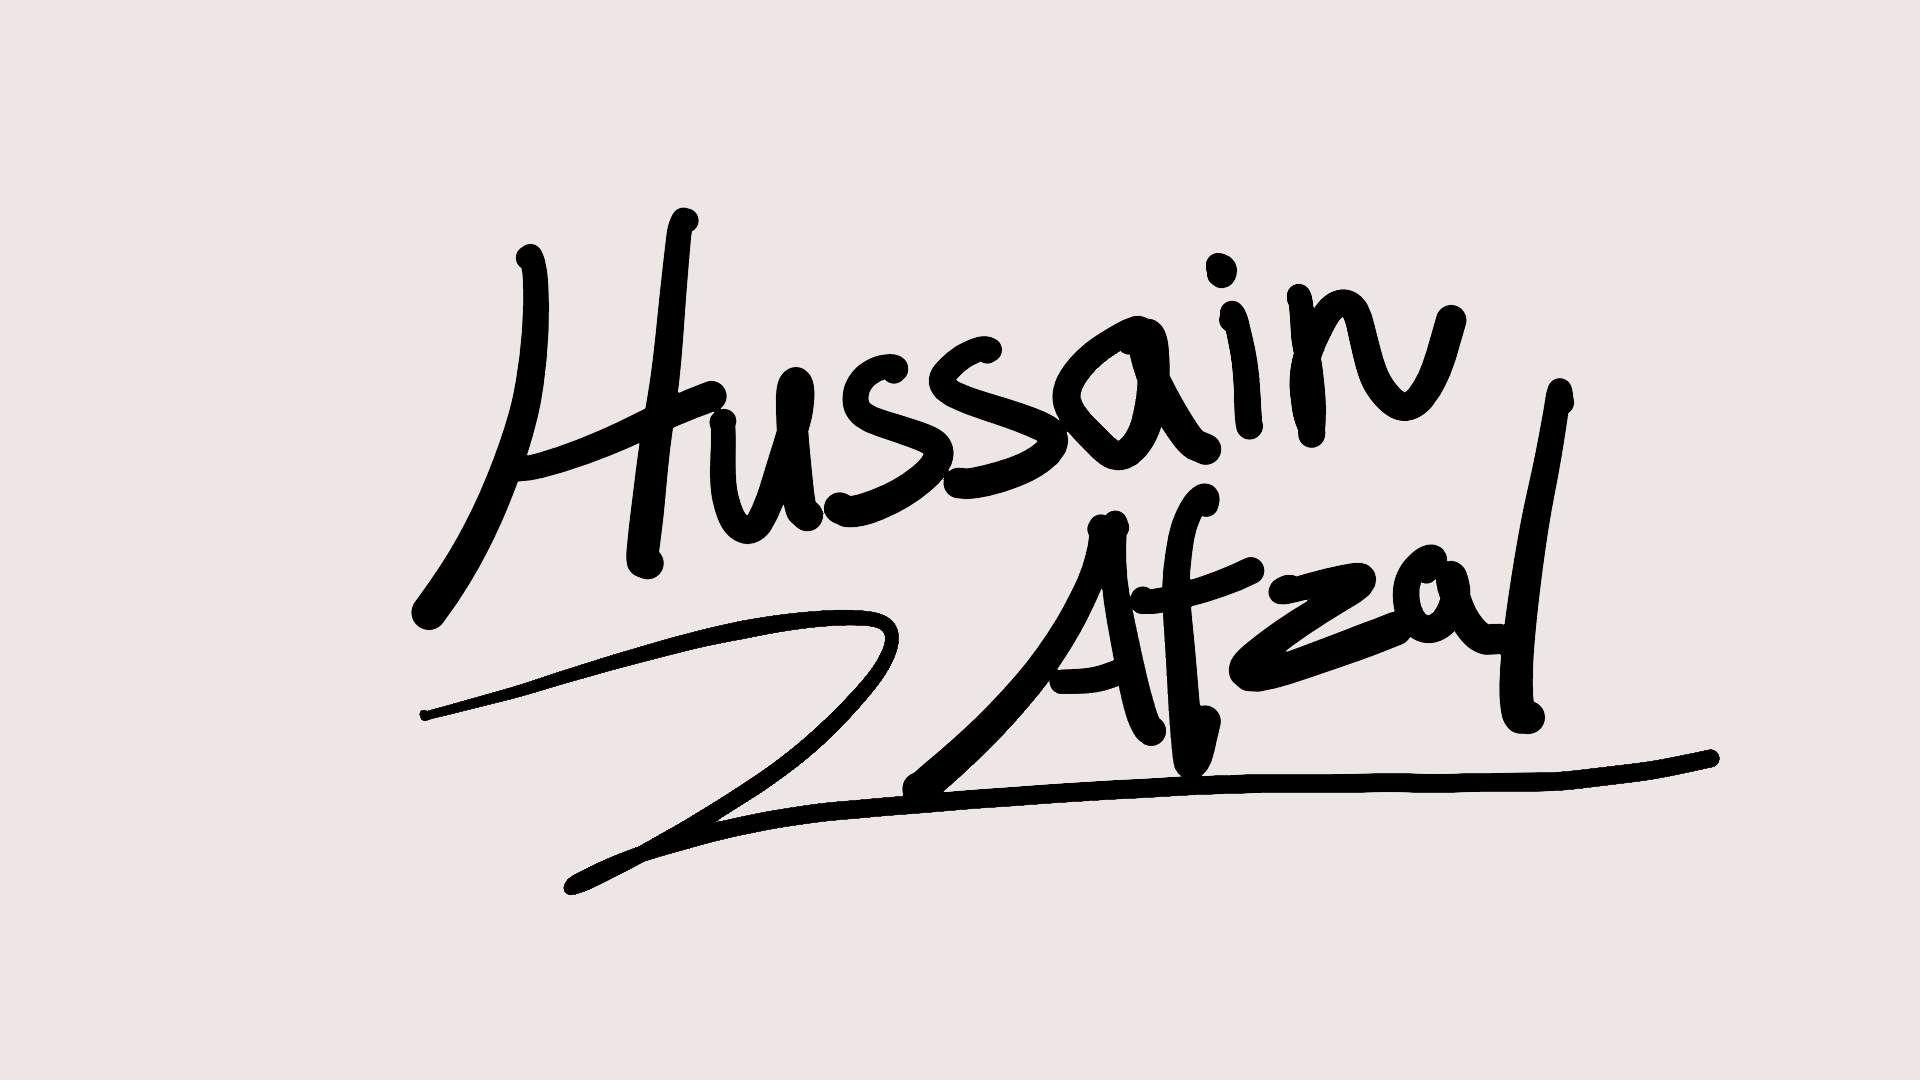 Hussain Afzal's Name Art